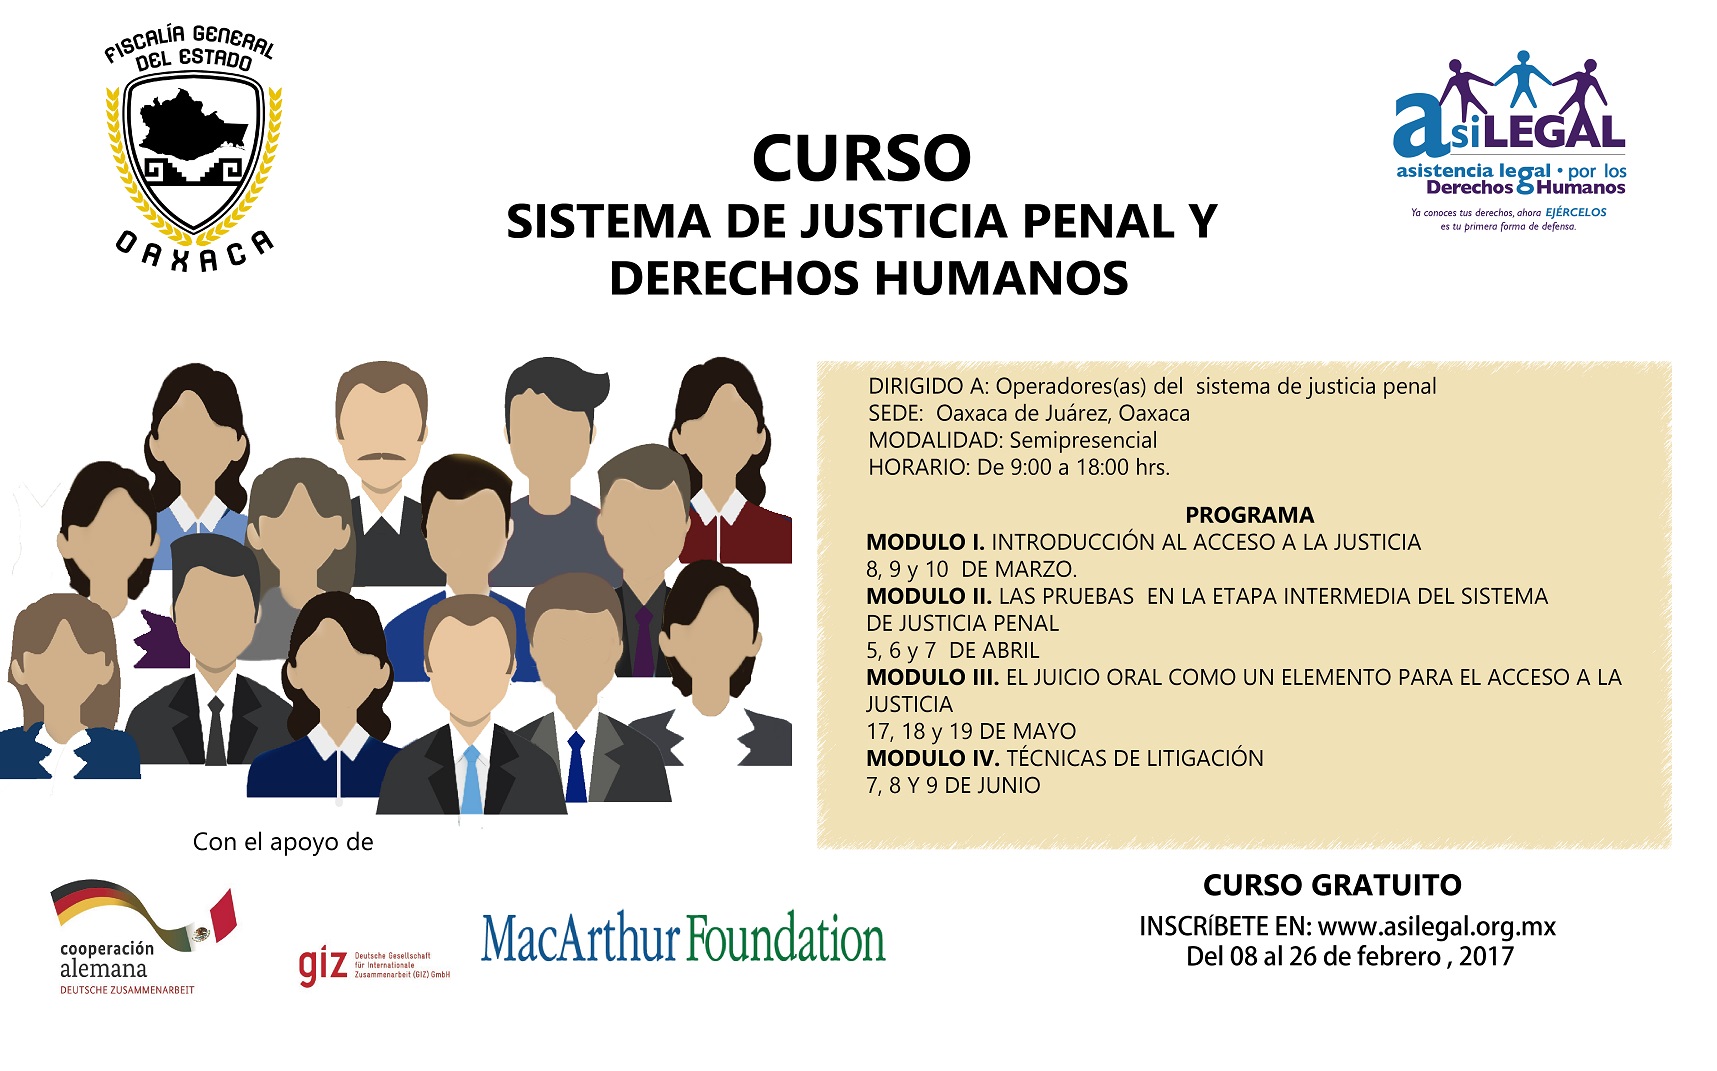 CURSO: Sistema de justicia penal y derechos humanos